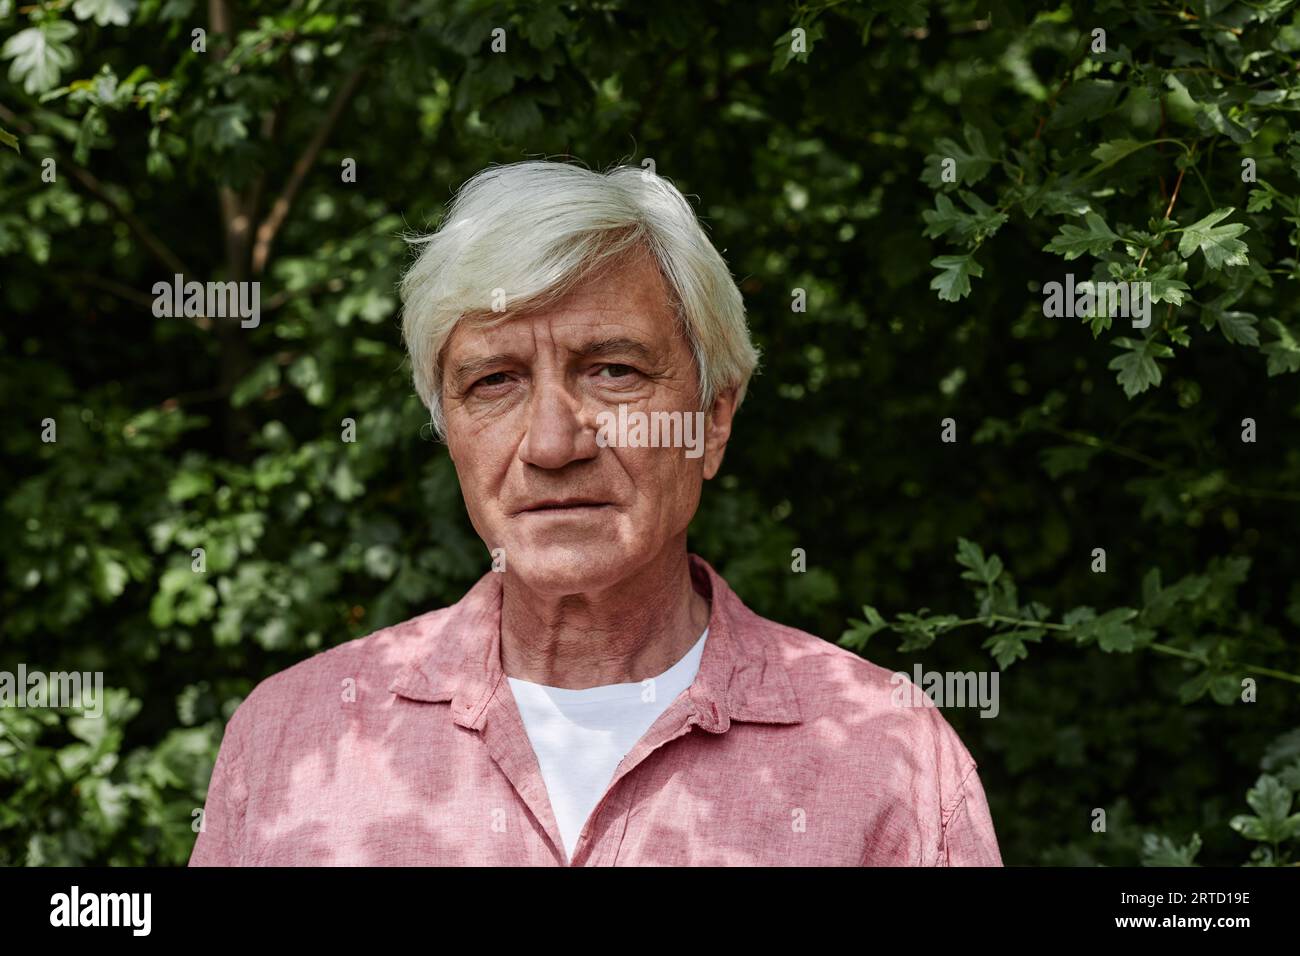 Vorderansicht Porträt eines weißhaarigen älteren Mannes, der die Kamera vor dem Grün im Freien betrachtet Stockfoto